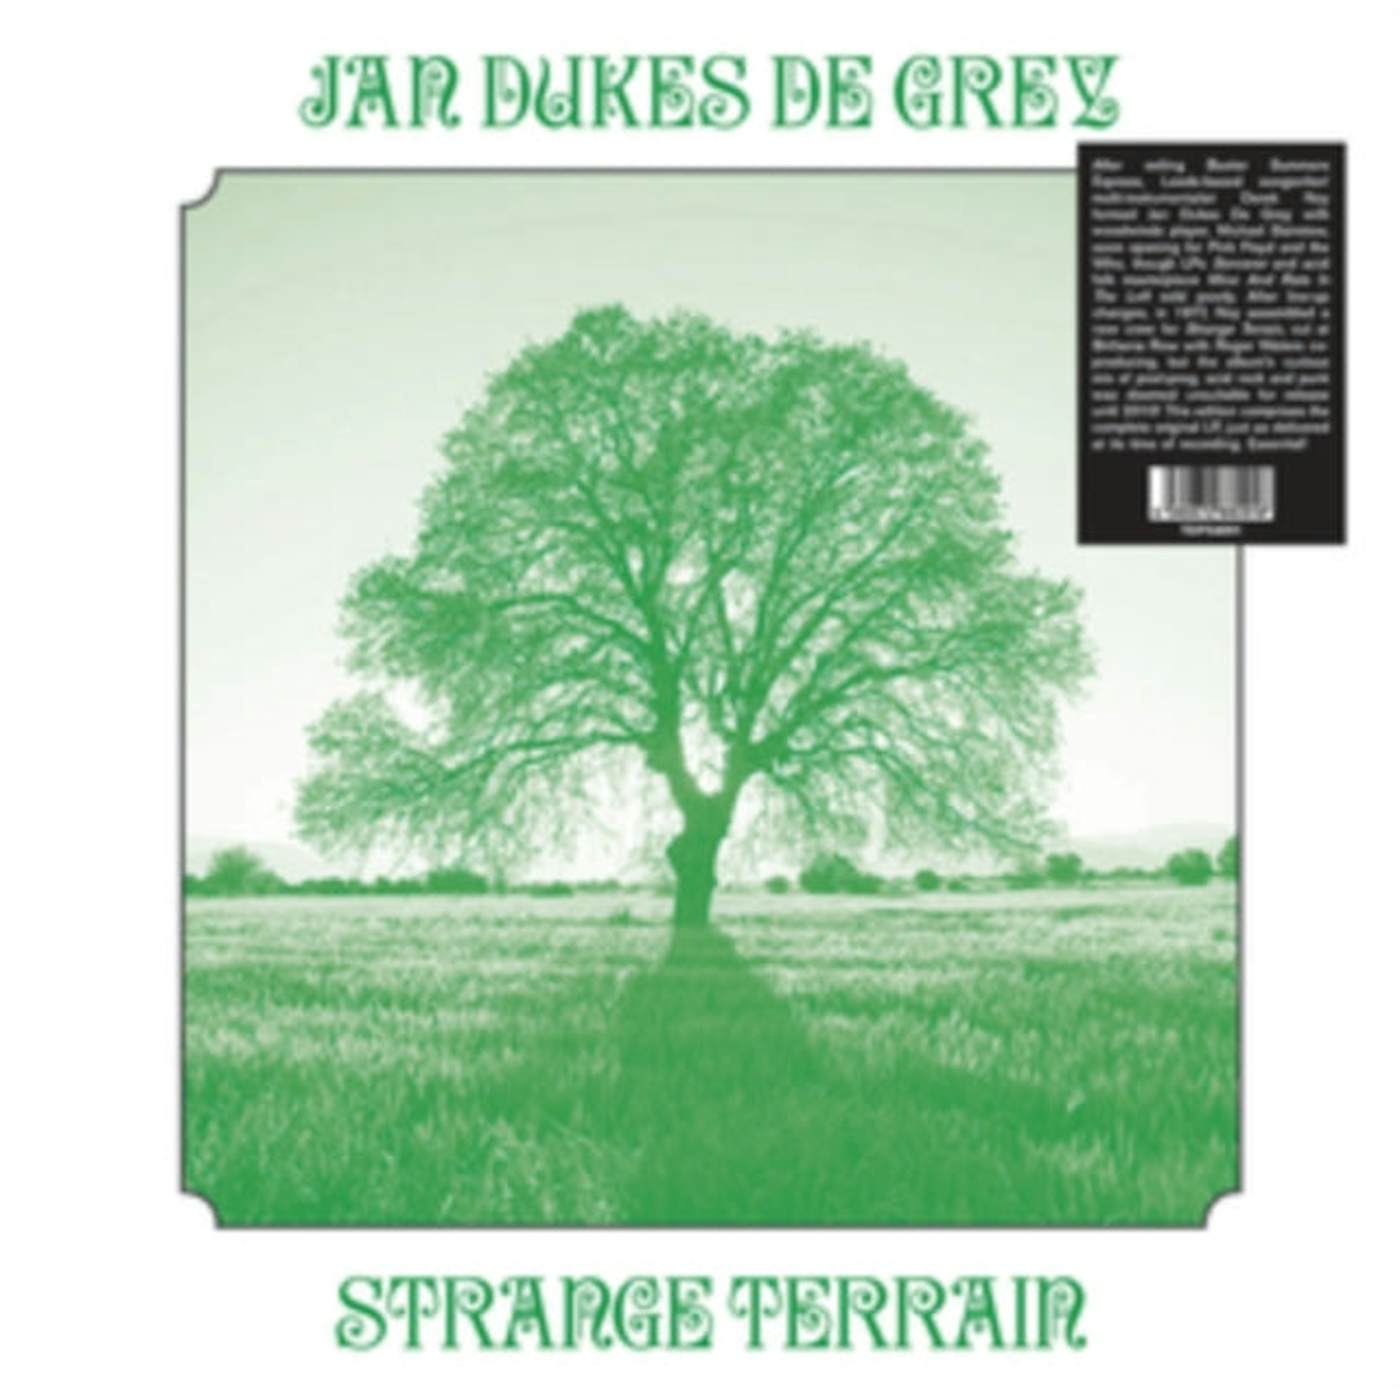 Jan Dukes De Grey LP - Strange Terrain (Vinyl)